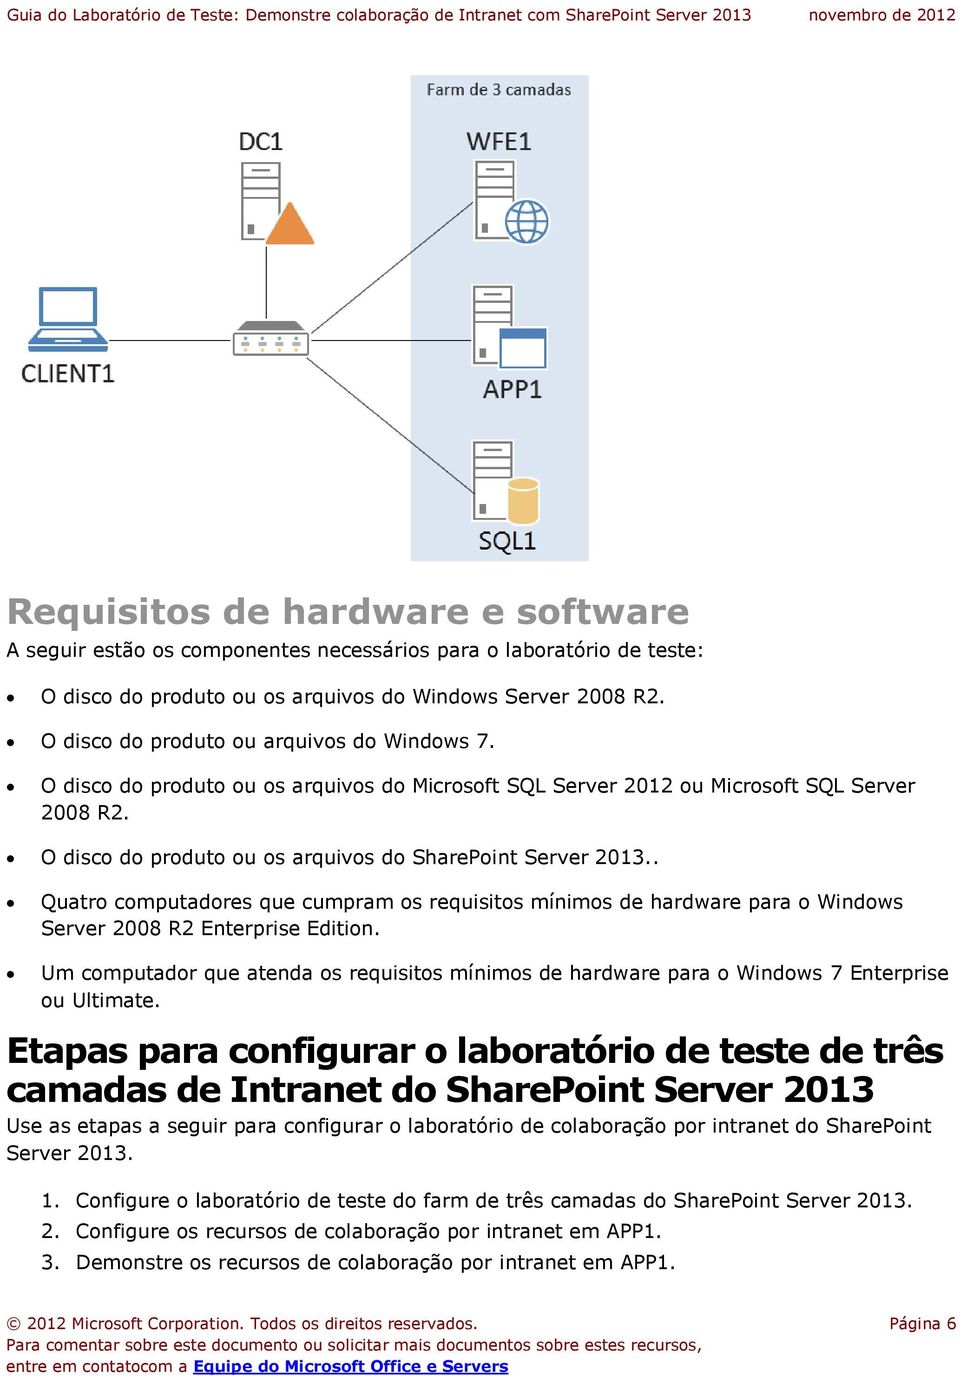 O disco do produto ou os arquivos do SharePoint Server 2013.. Quatro computadores que cumpram os requisitos mínimos de hardware para o Windows Server 2008 R2 Enterprise Edition.